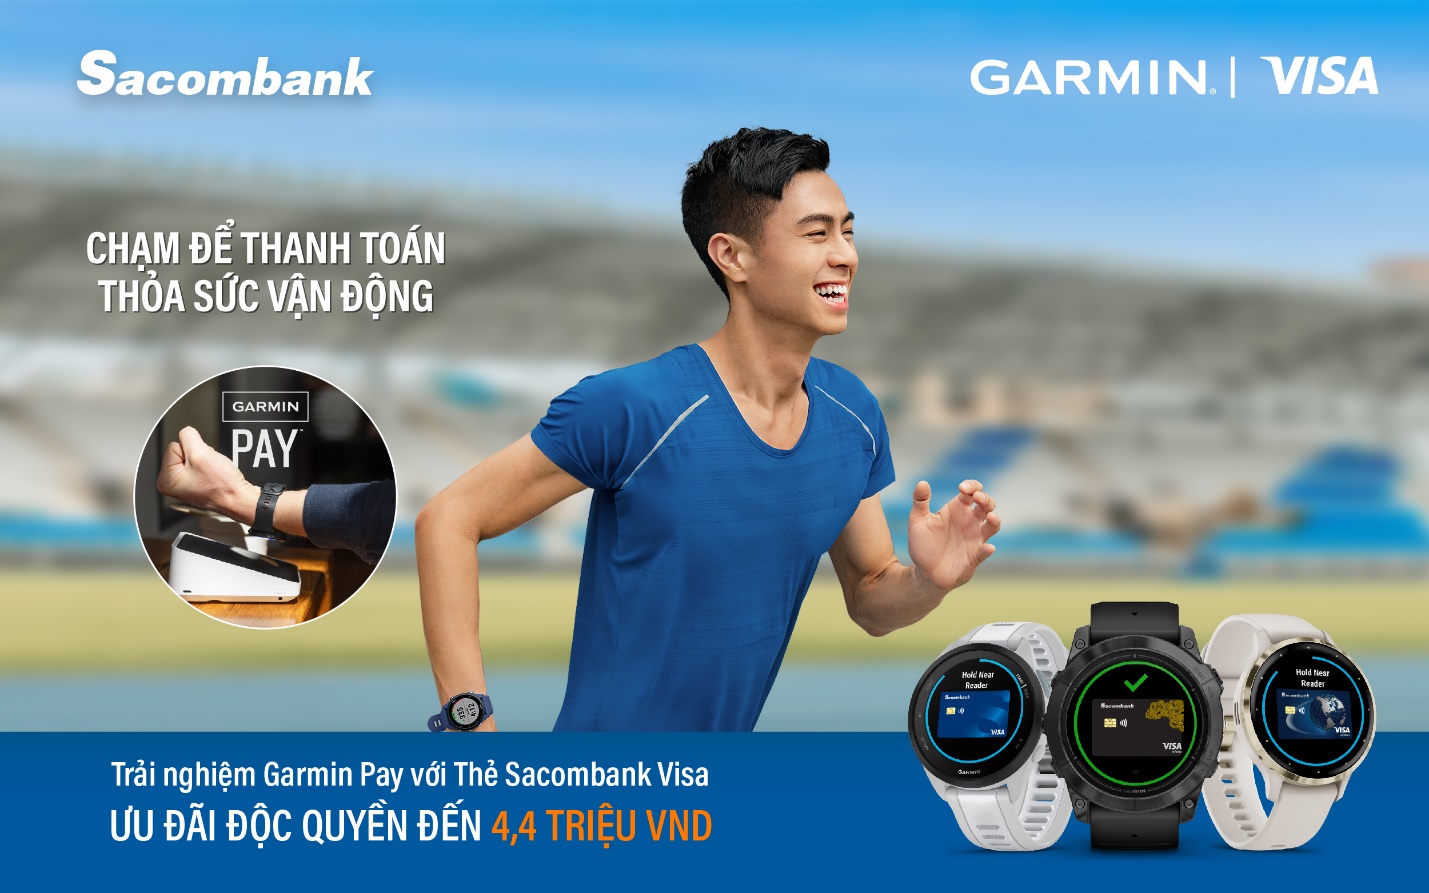 Sacombank kết nối với Garmin Pay - giải pháp thanh toán không tiếp xúc trên đồng hồ thông minh- Ảnh 1.